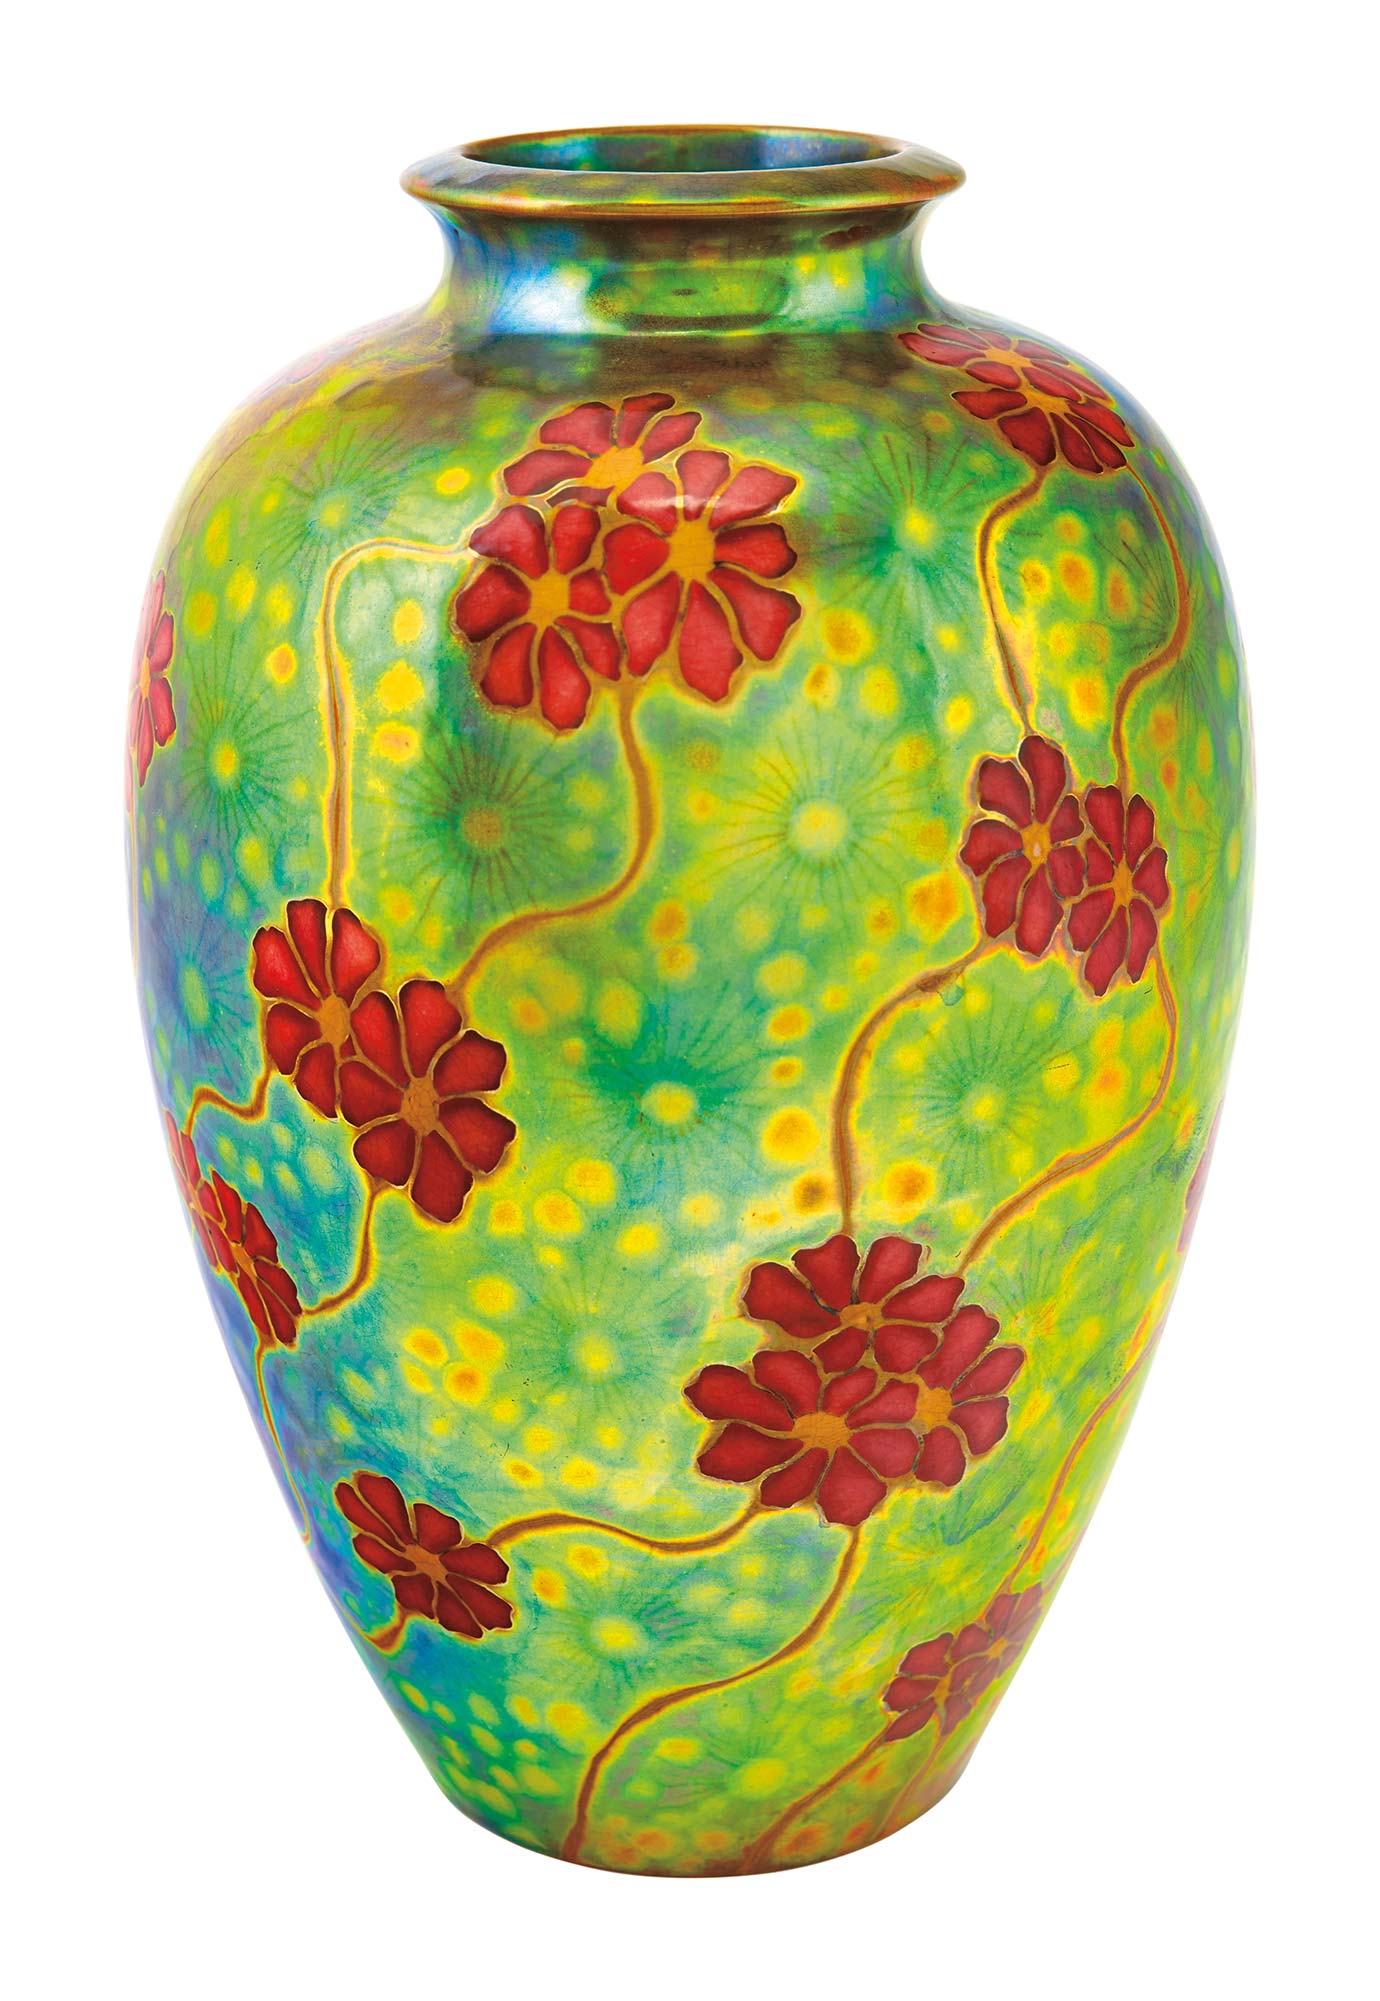 Zsolnay Flower Field Vase, Zsolnay, around 1902